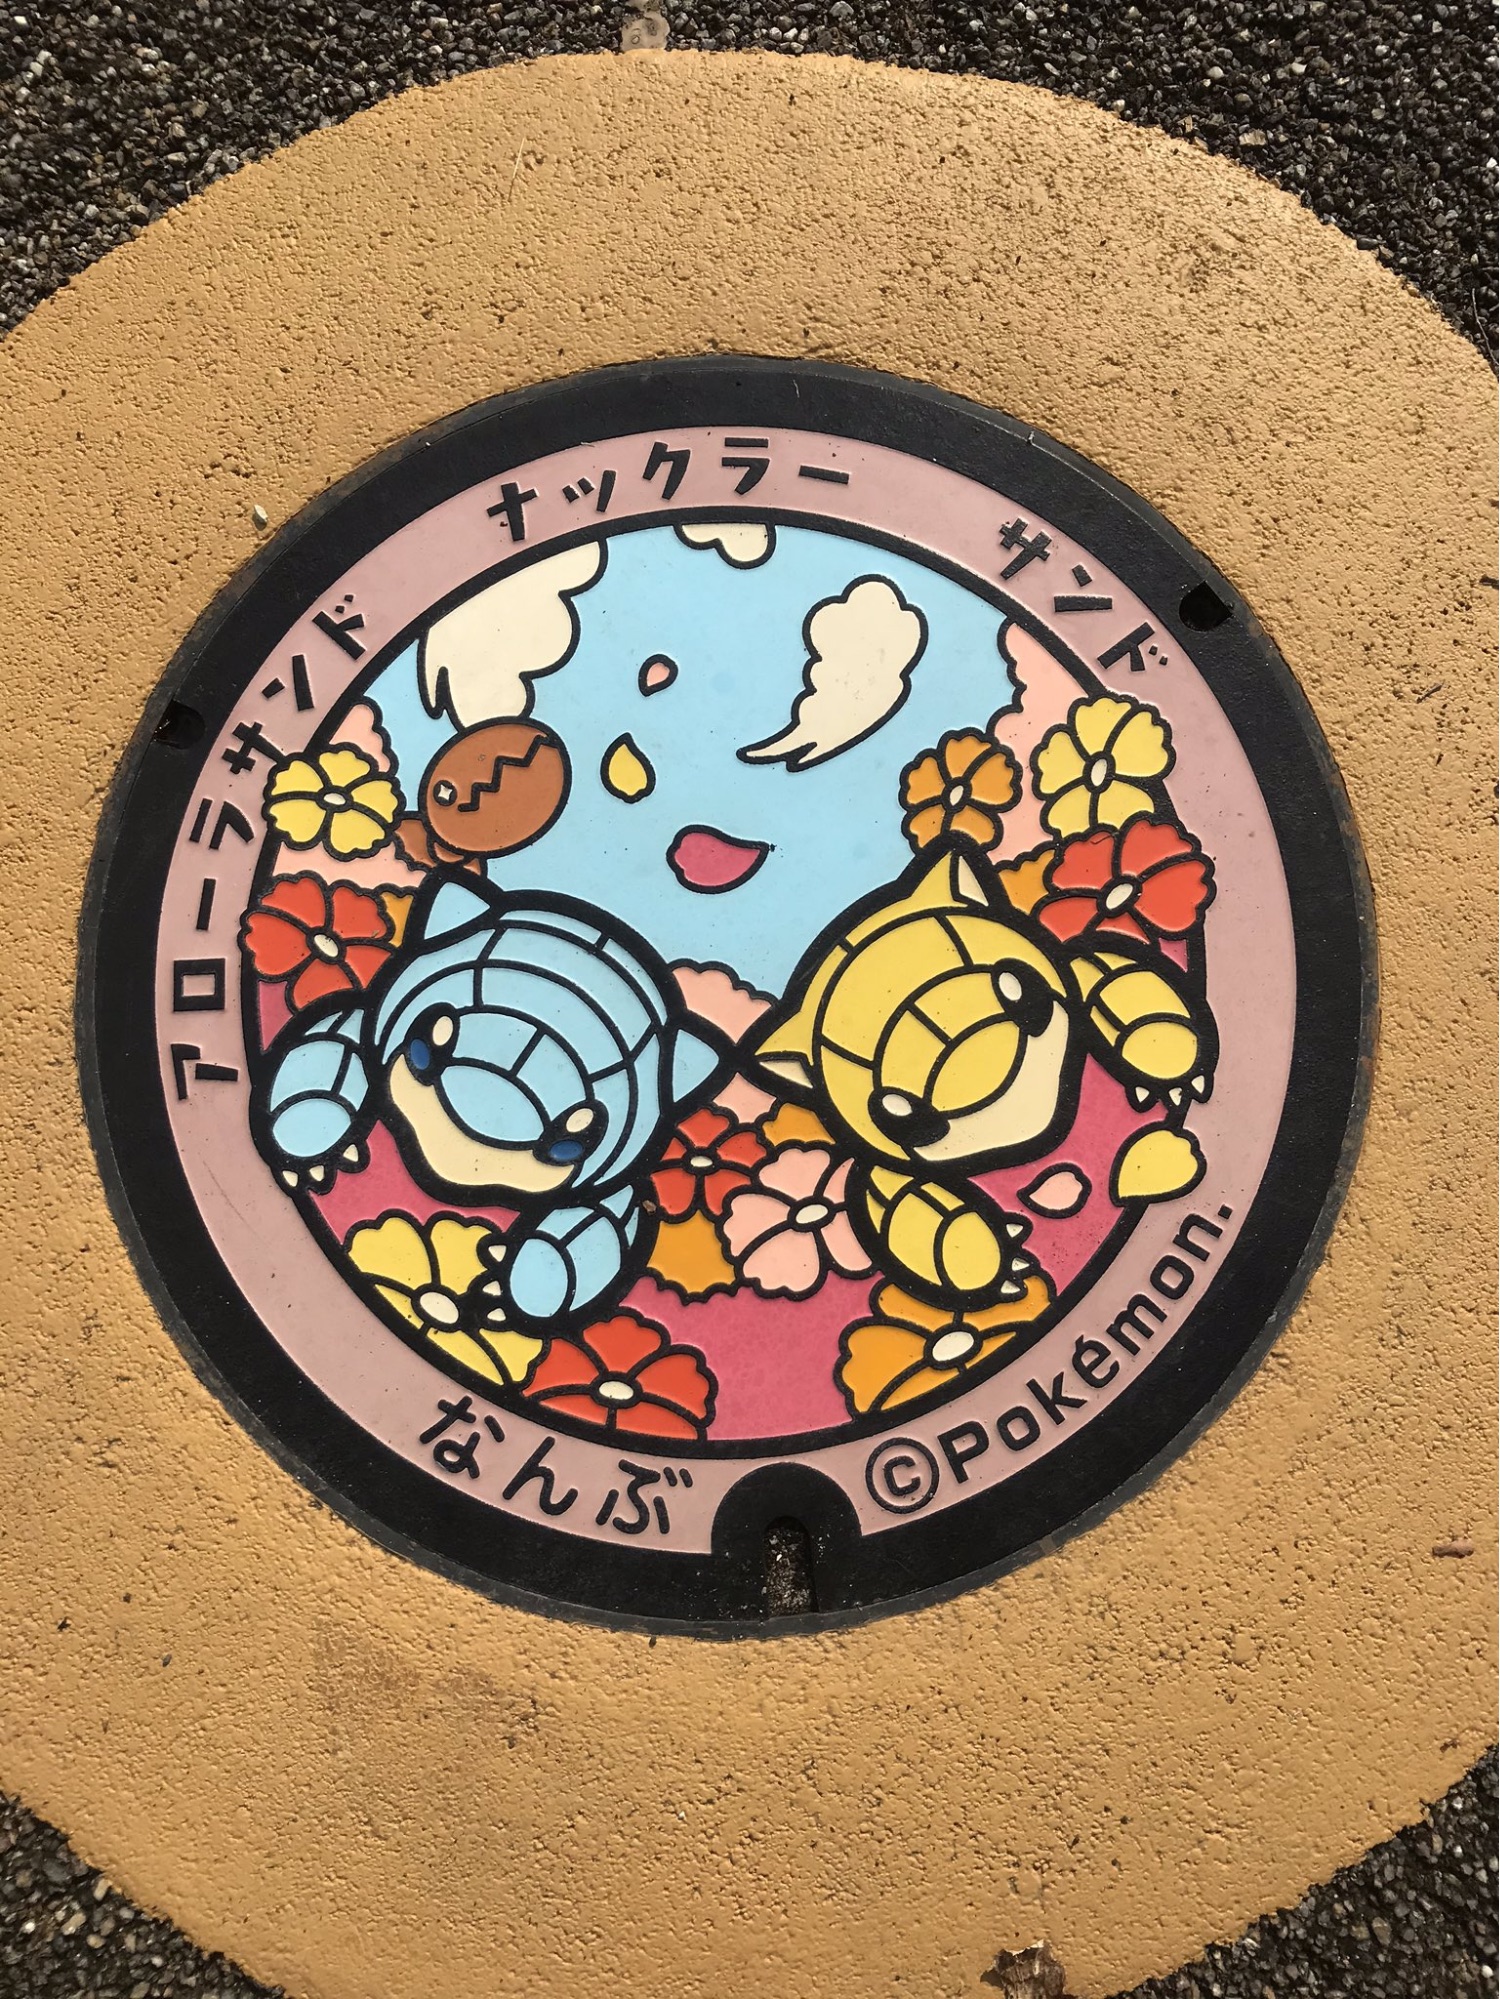 Pokémon fun facts - pokemon manhole